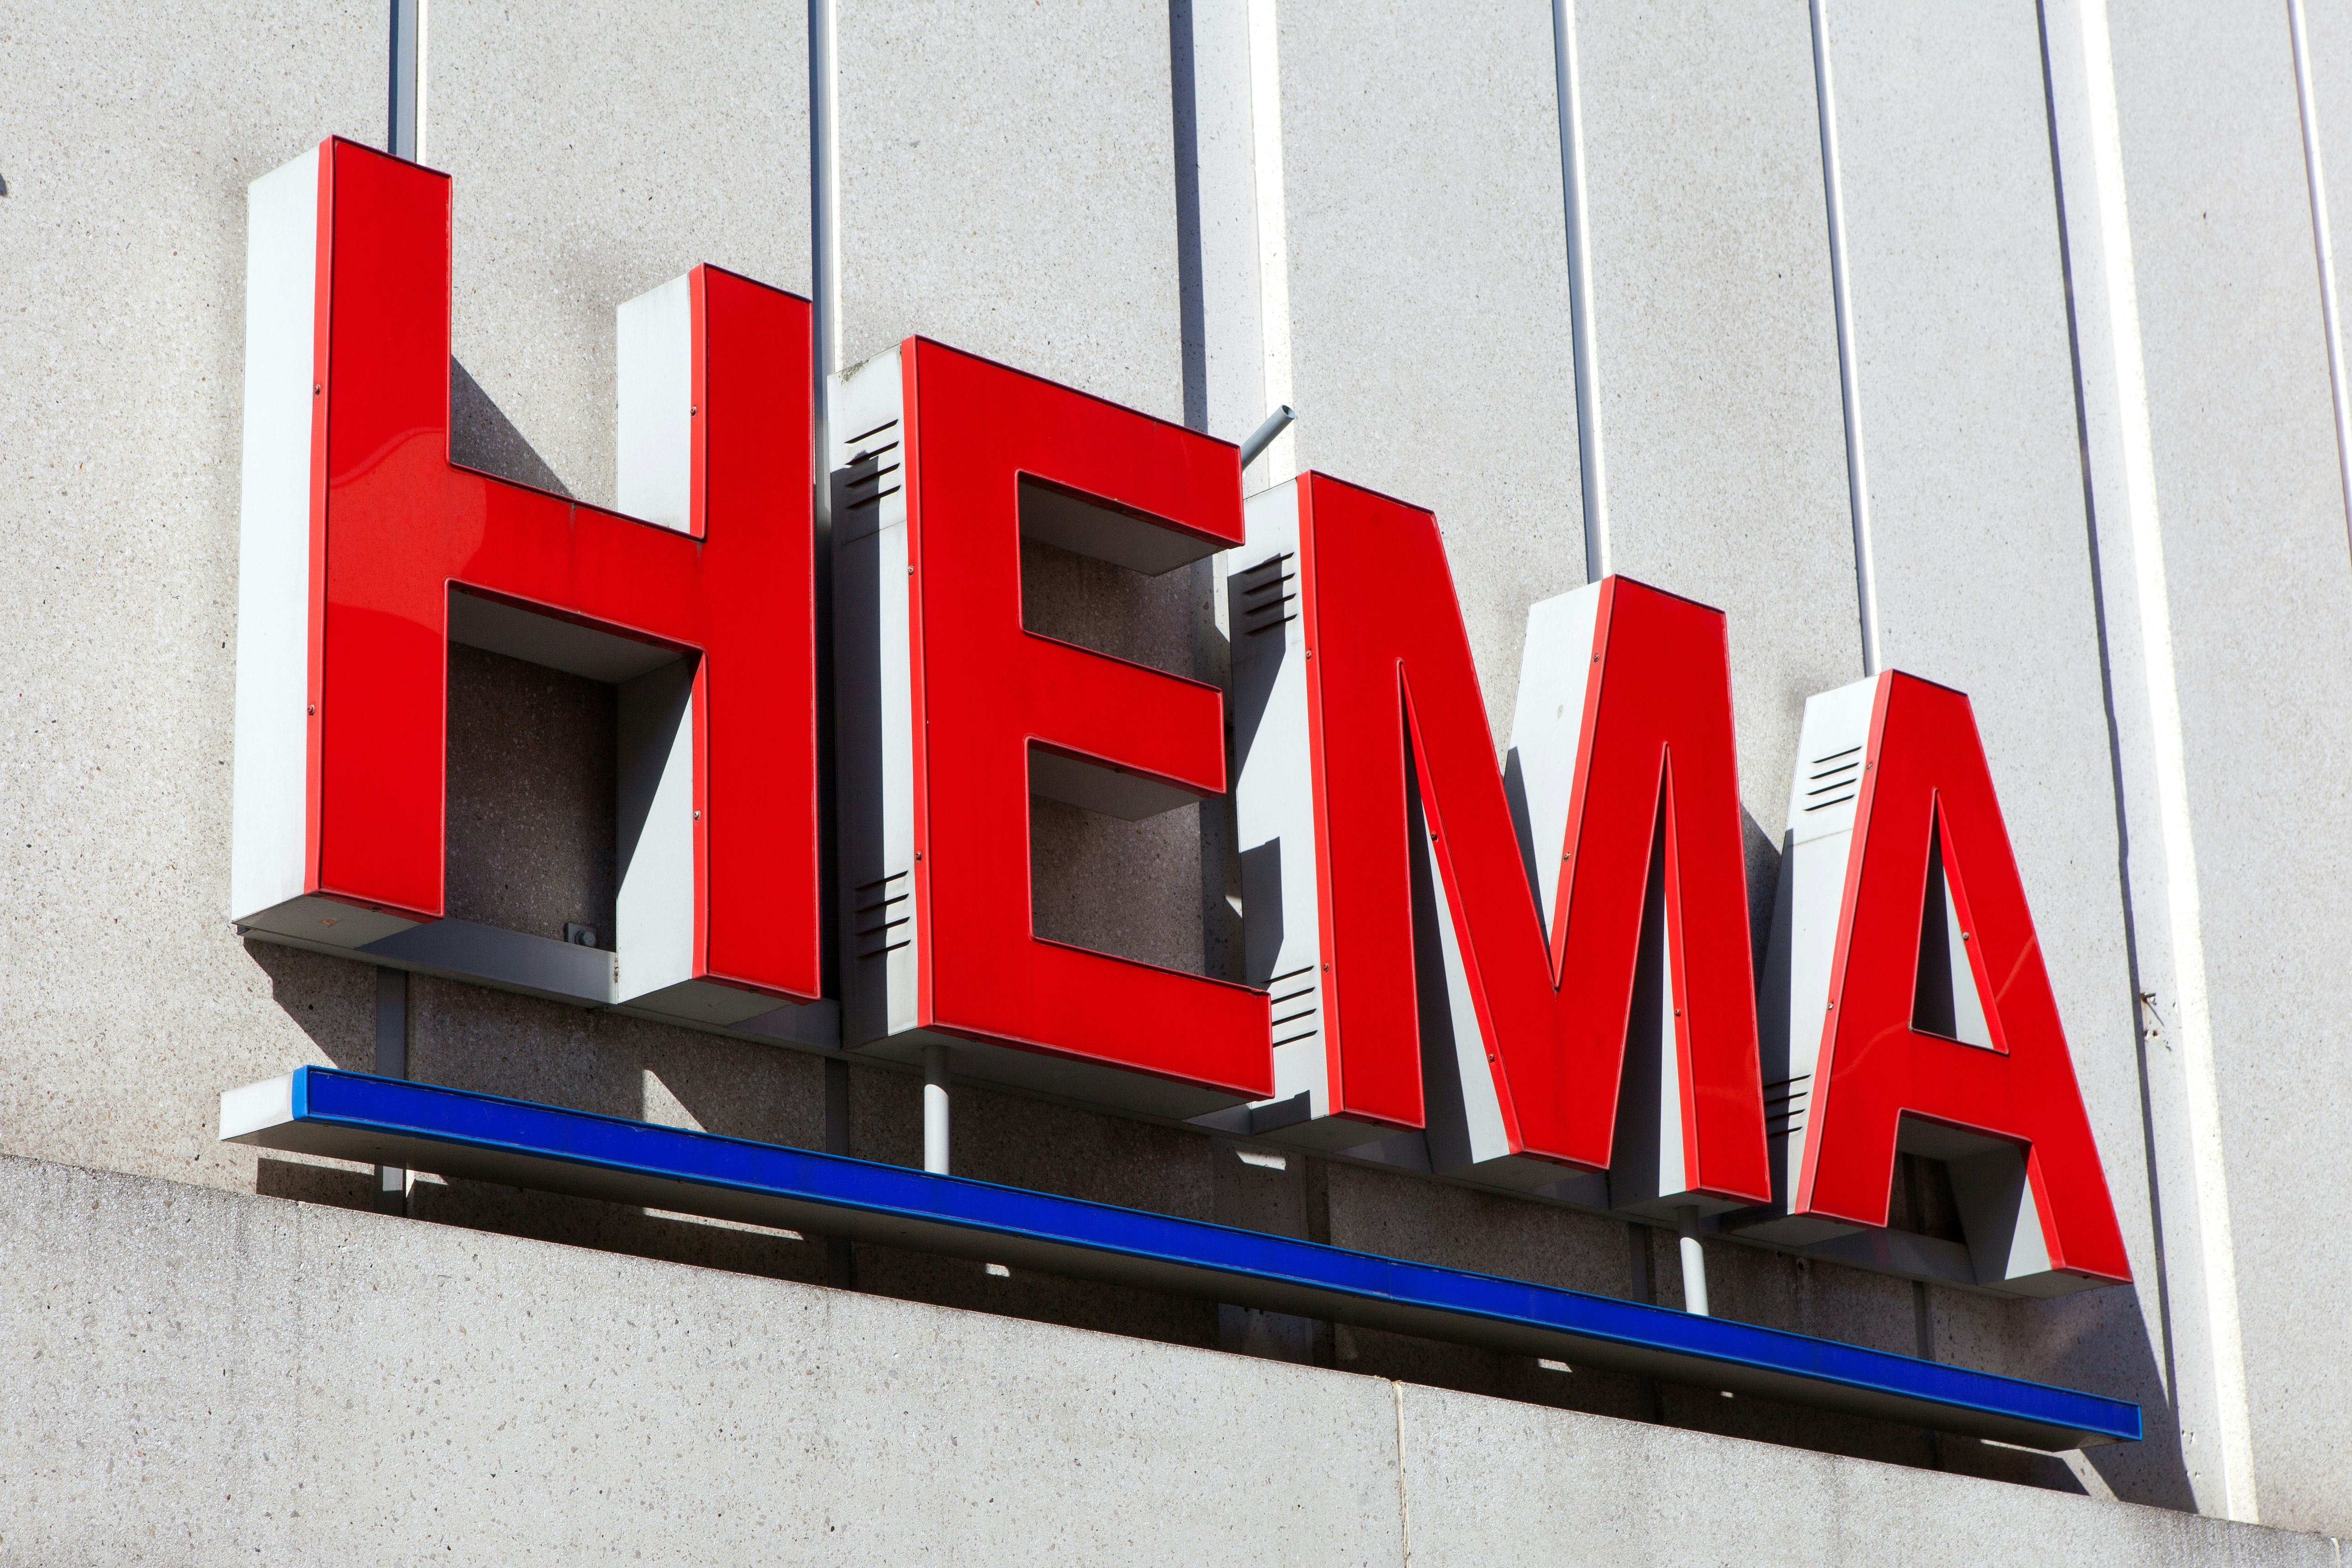 Ophef Beneden afronden het winkelcentrum Zakenbank onderzoekt verkoop van Hema'